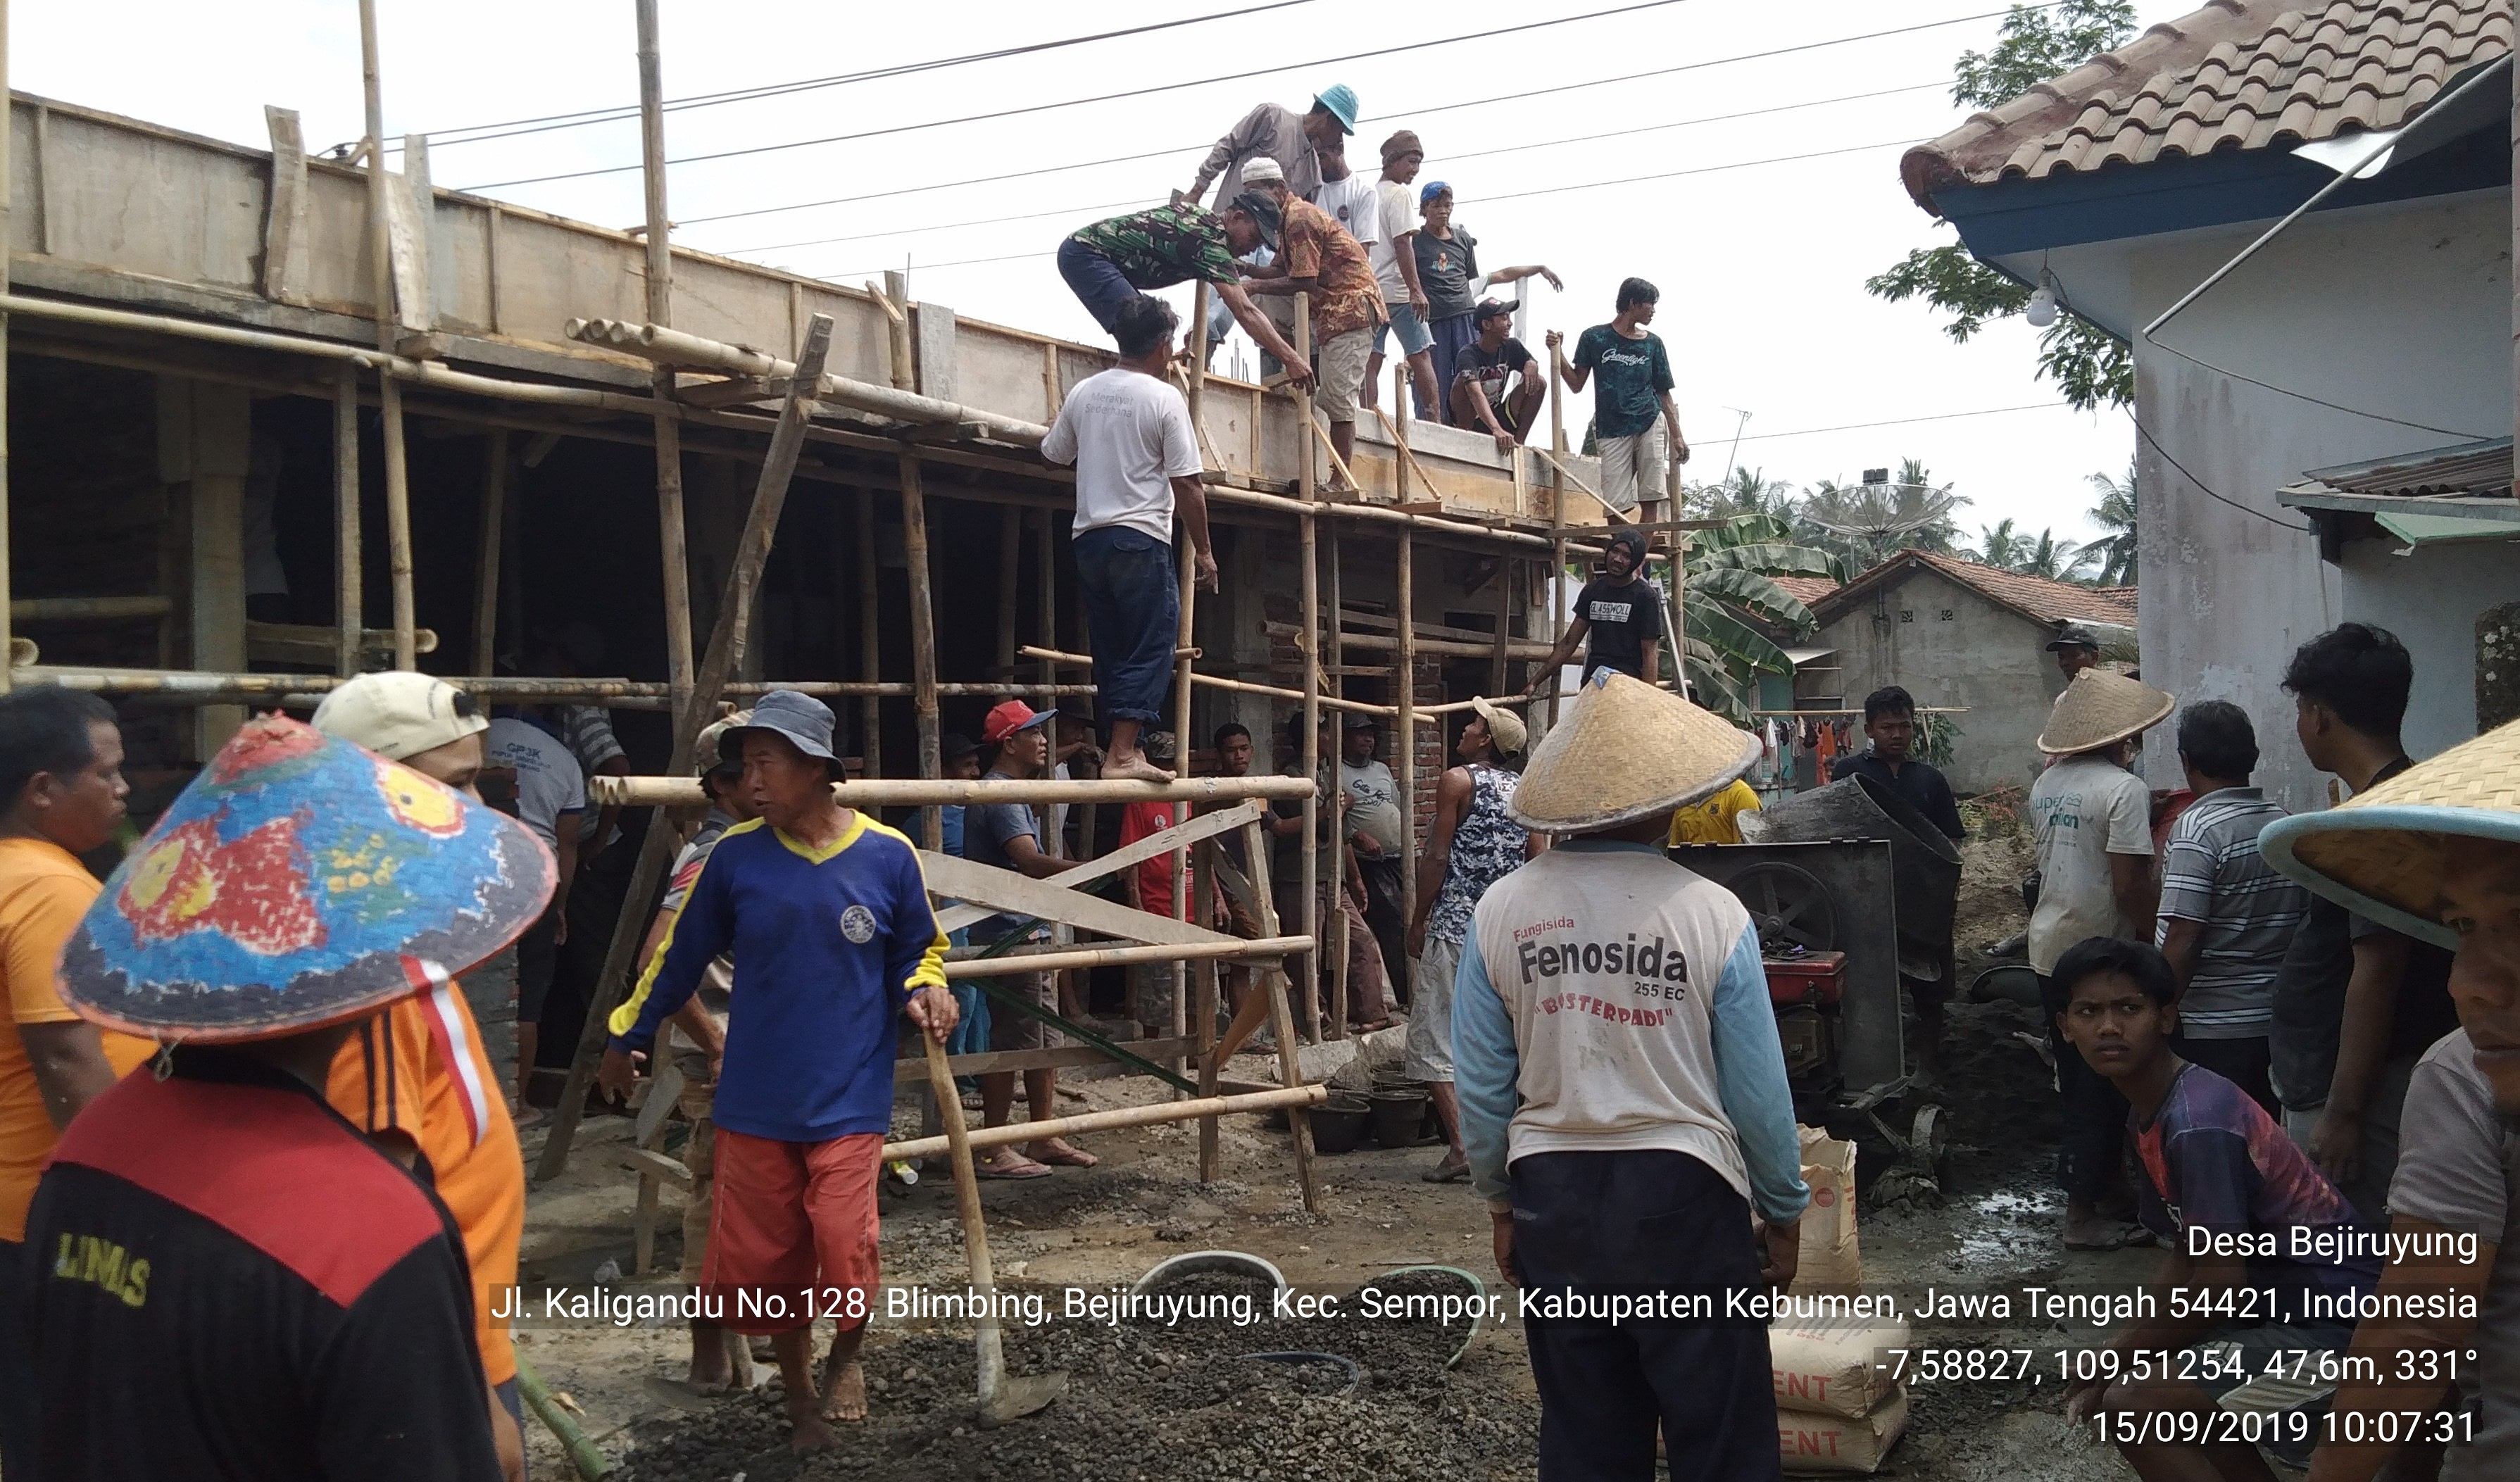 Perbaikan Tempat Wudhu dan Kamar Kecil Masjid Baiturrohim Desa Bejiruyung 01